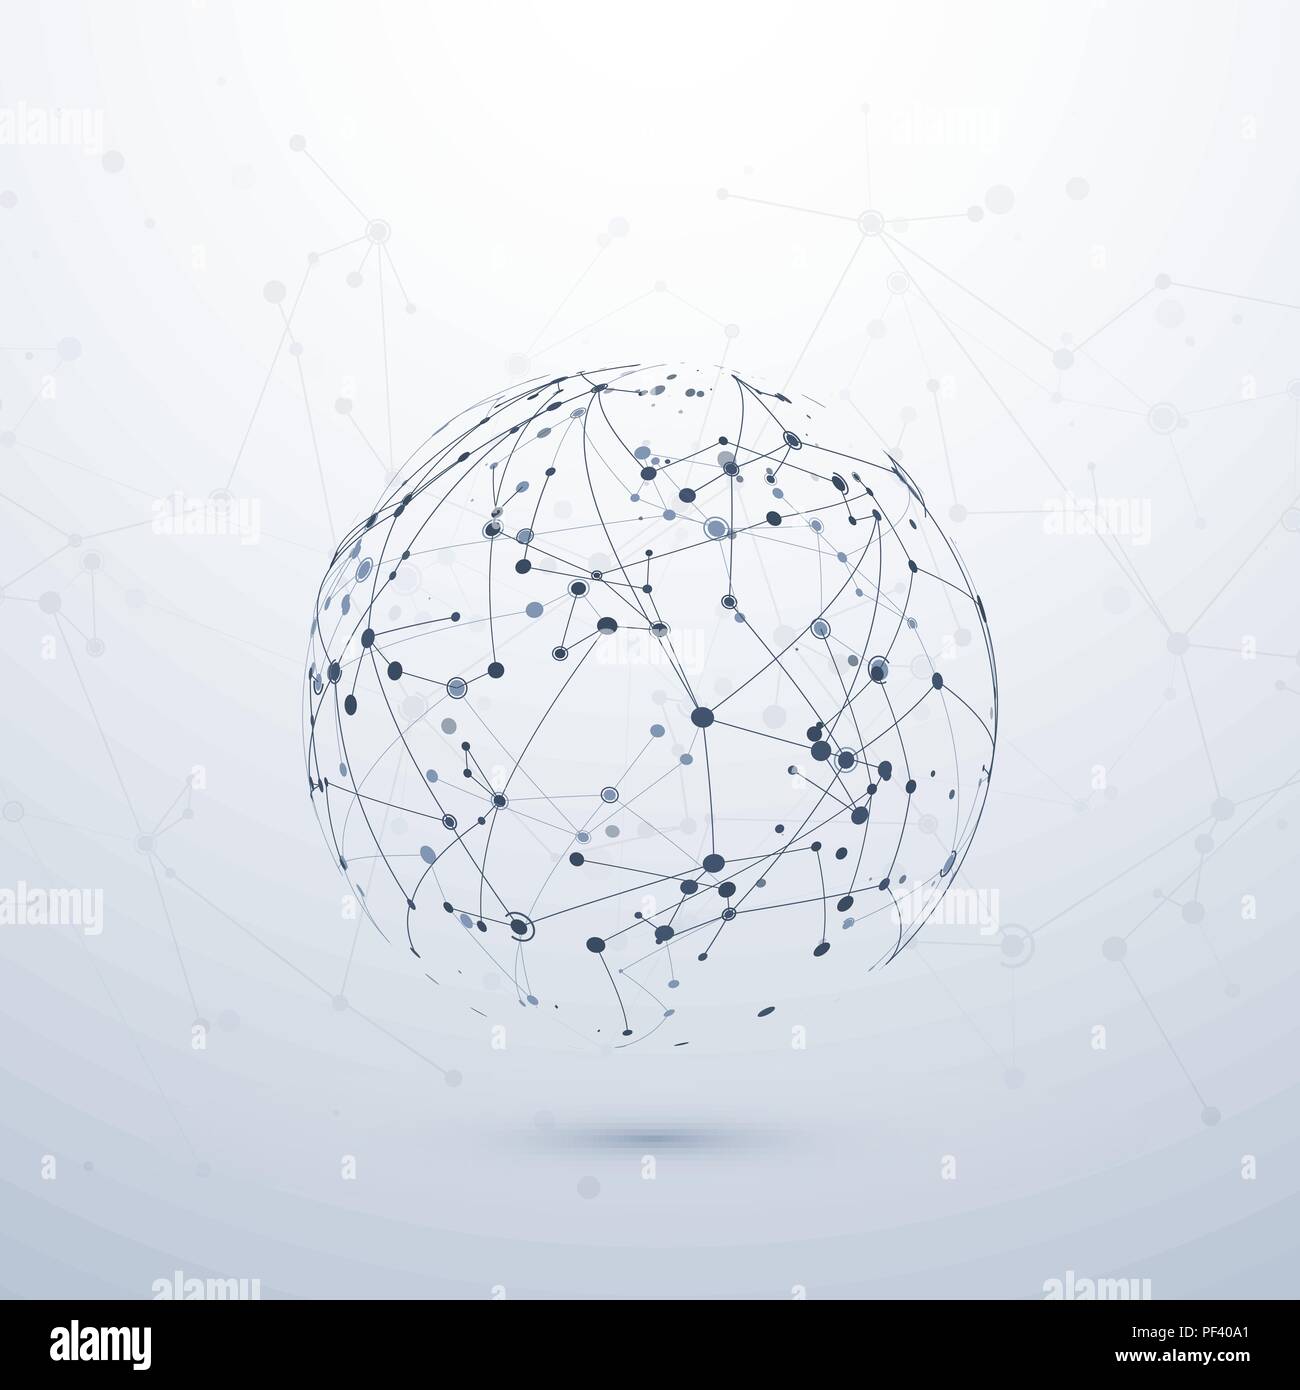 Plexus visualizzazione dati. Complesso chimico il nodo di connessione. Concetto di Internet. Wireframe struttura di rete. Illustrazione Vettoriale Illustrazione Vettoriale